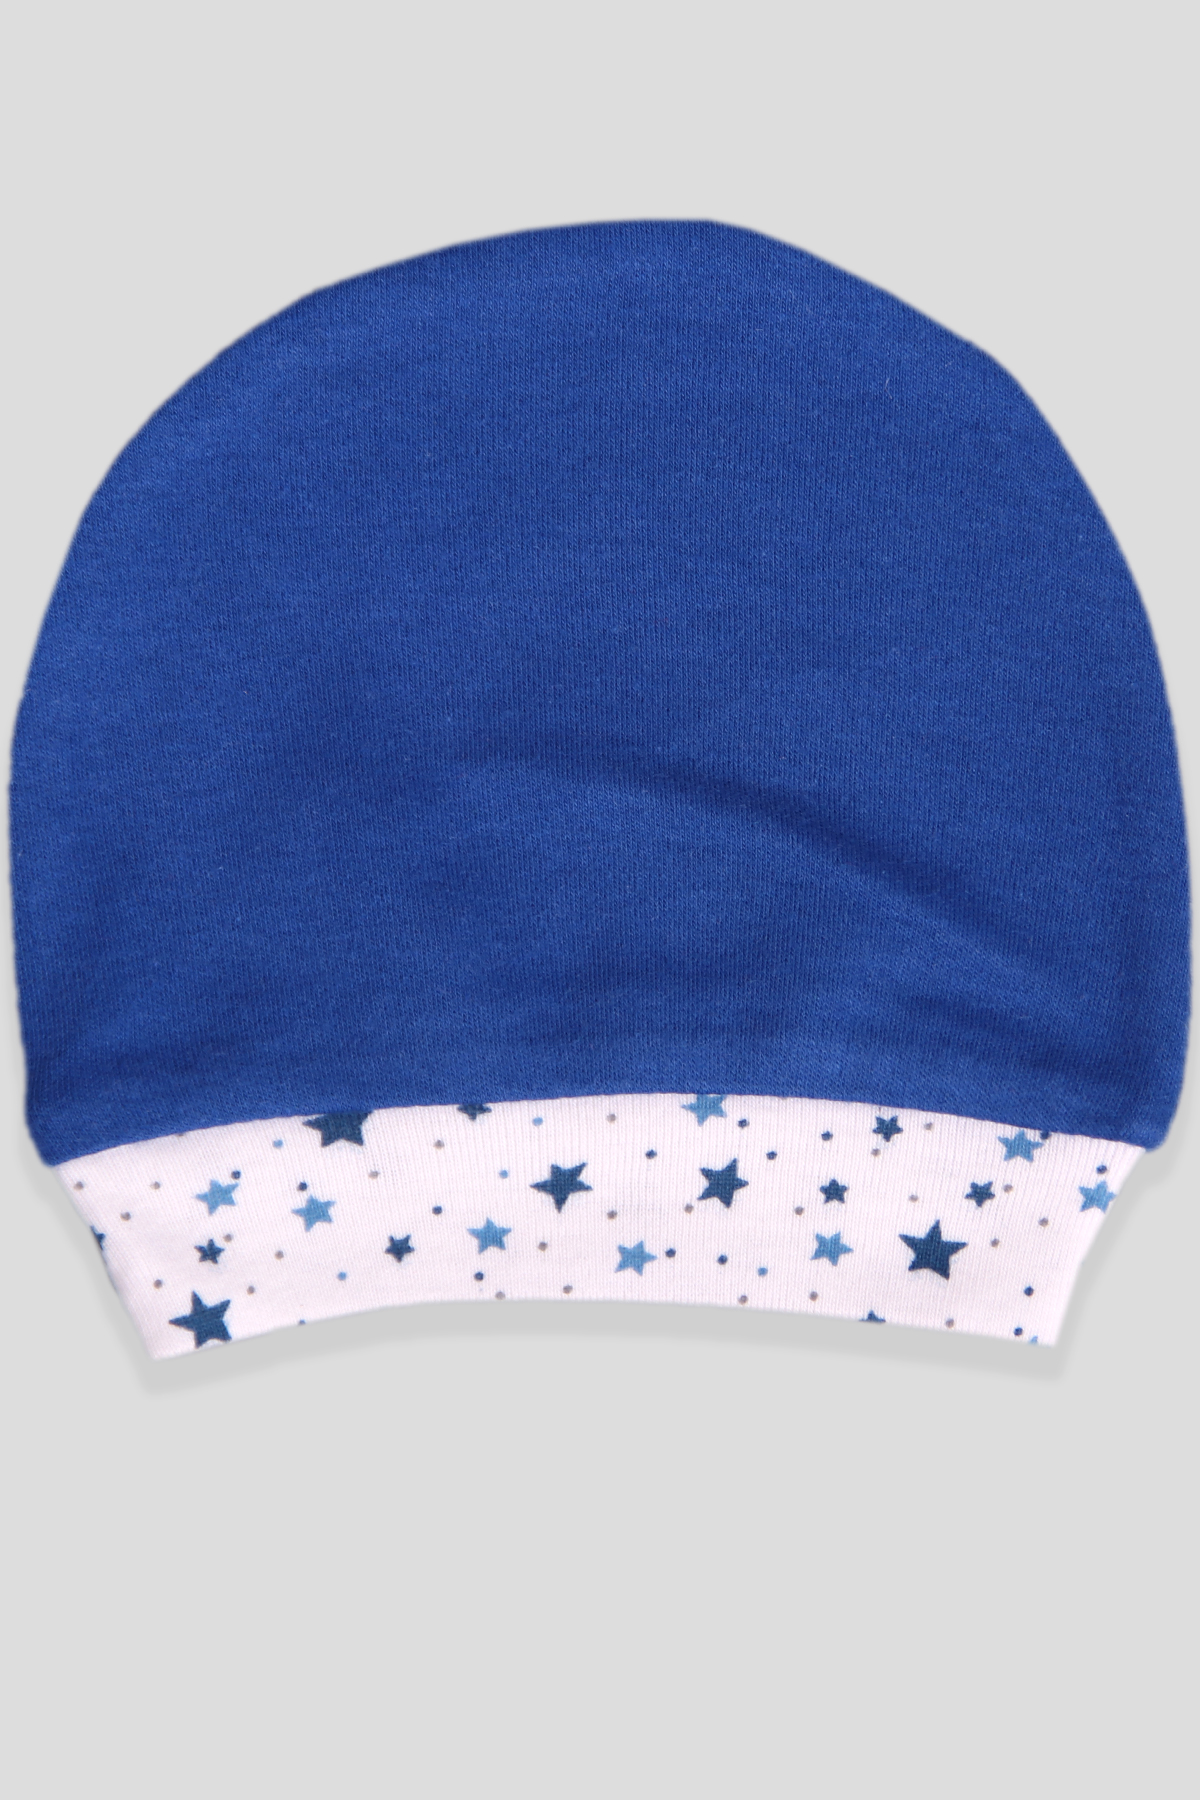 Yeni Doğan Bebek Şapkası - Lacivert | Breeze Kids